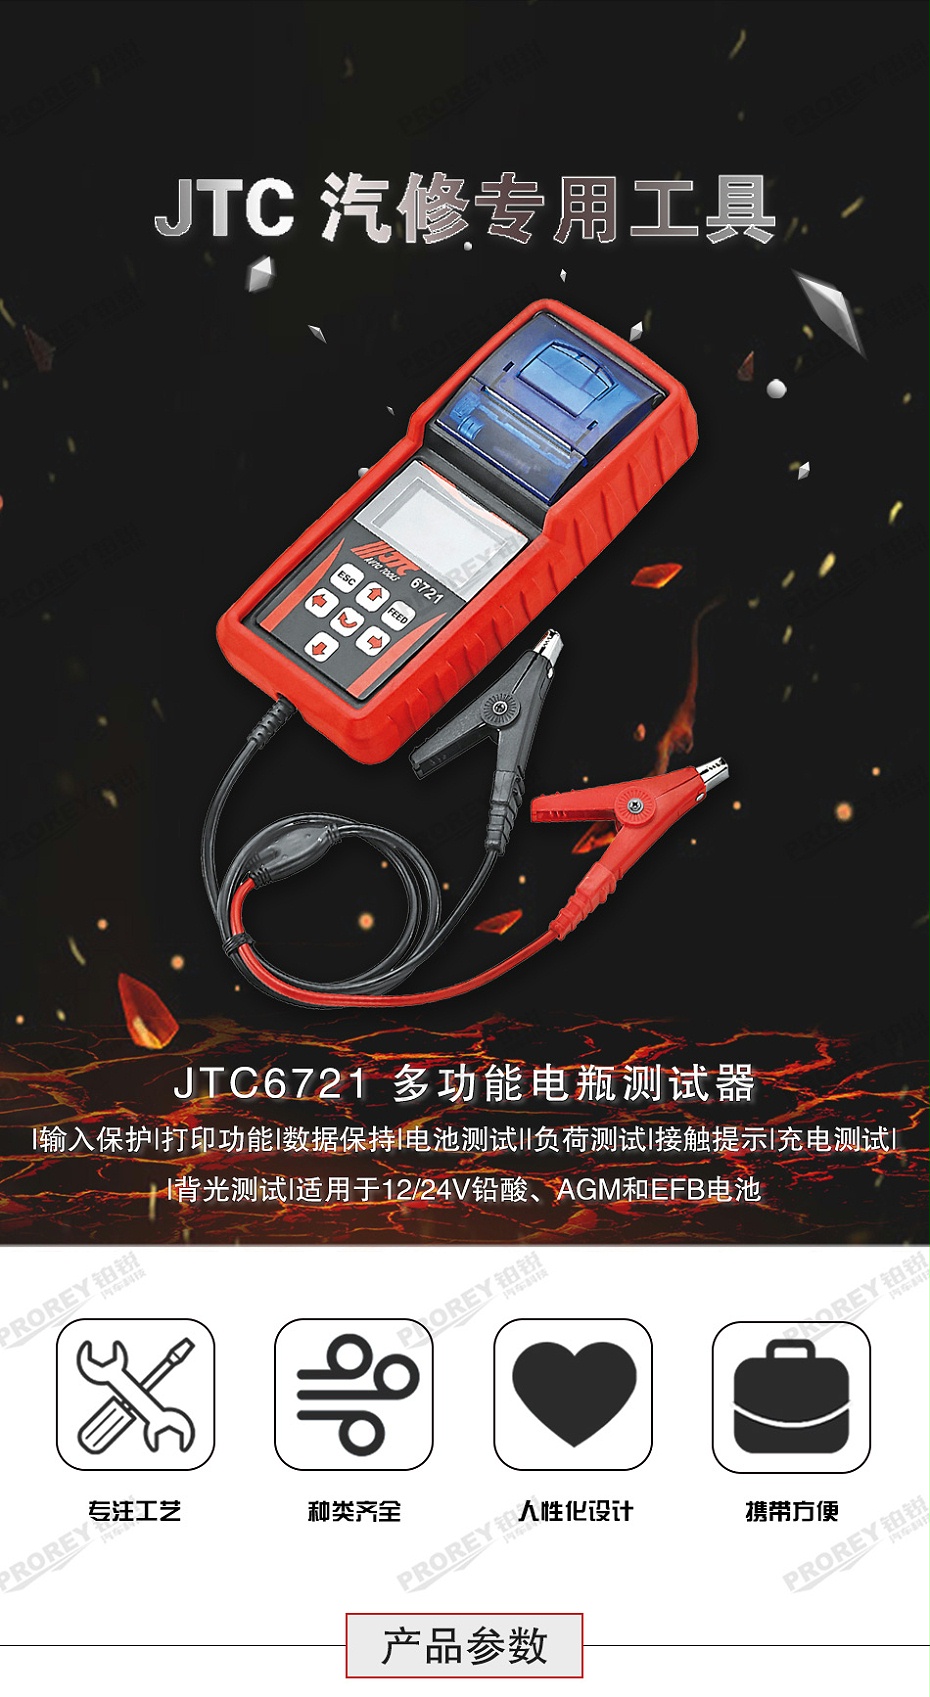 GW-130040818-JTC-6721-多功能电瓶测试器（附列表） -1